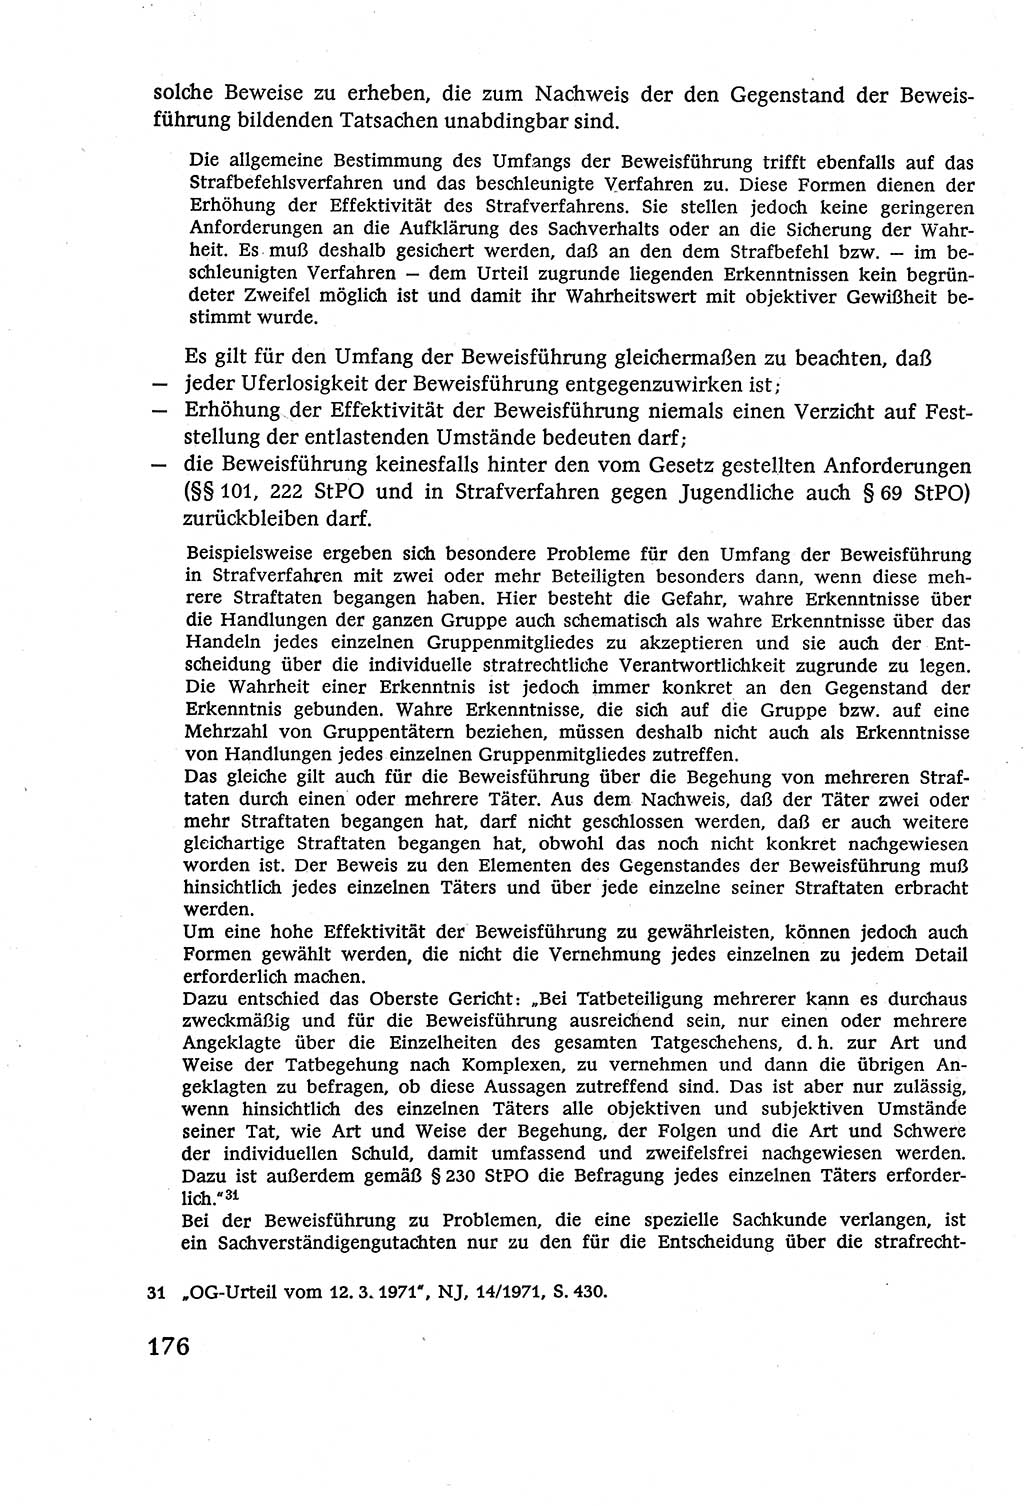 Strafverfahrensrecht [Deutsche Demokratische Republik (DDR)], Lehrbuch 1977, Seite 176 (Strafverf.-R. DDR Lb. 1977, S. 176)